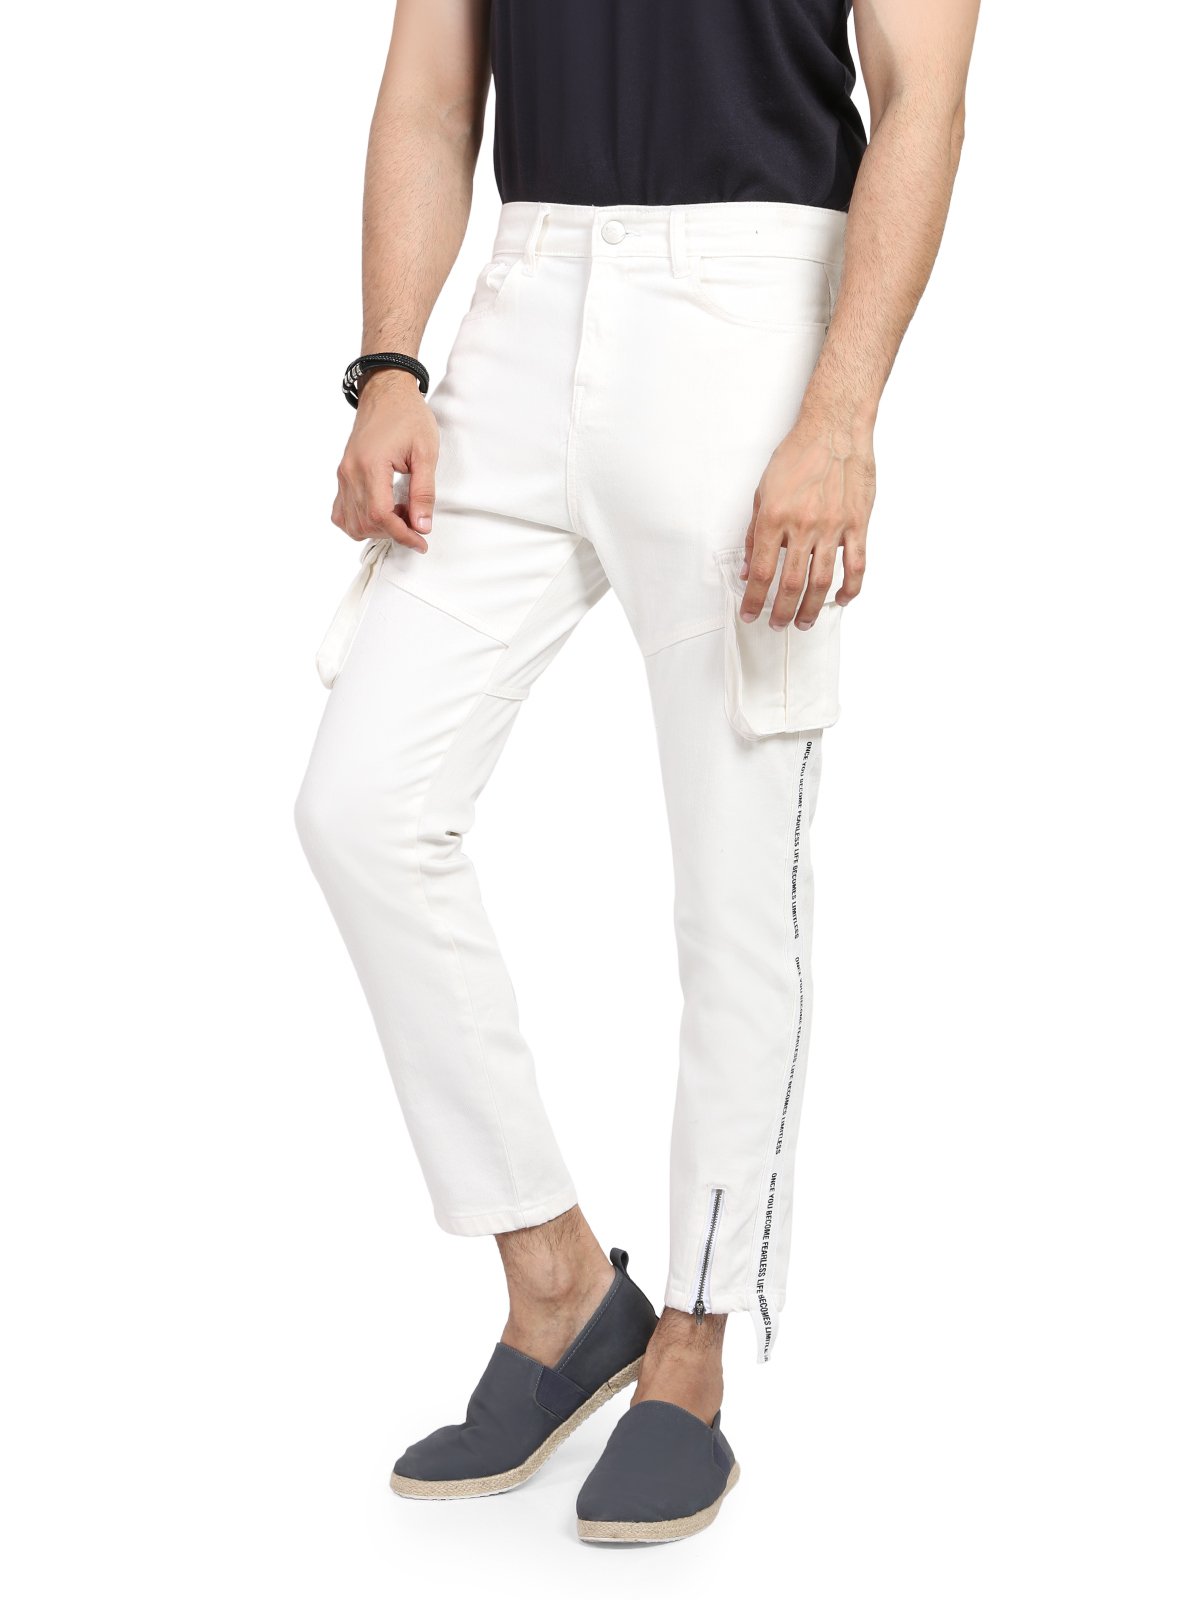 Men's Off White Denim Jeans - FMBPC19-002